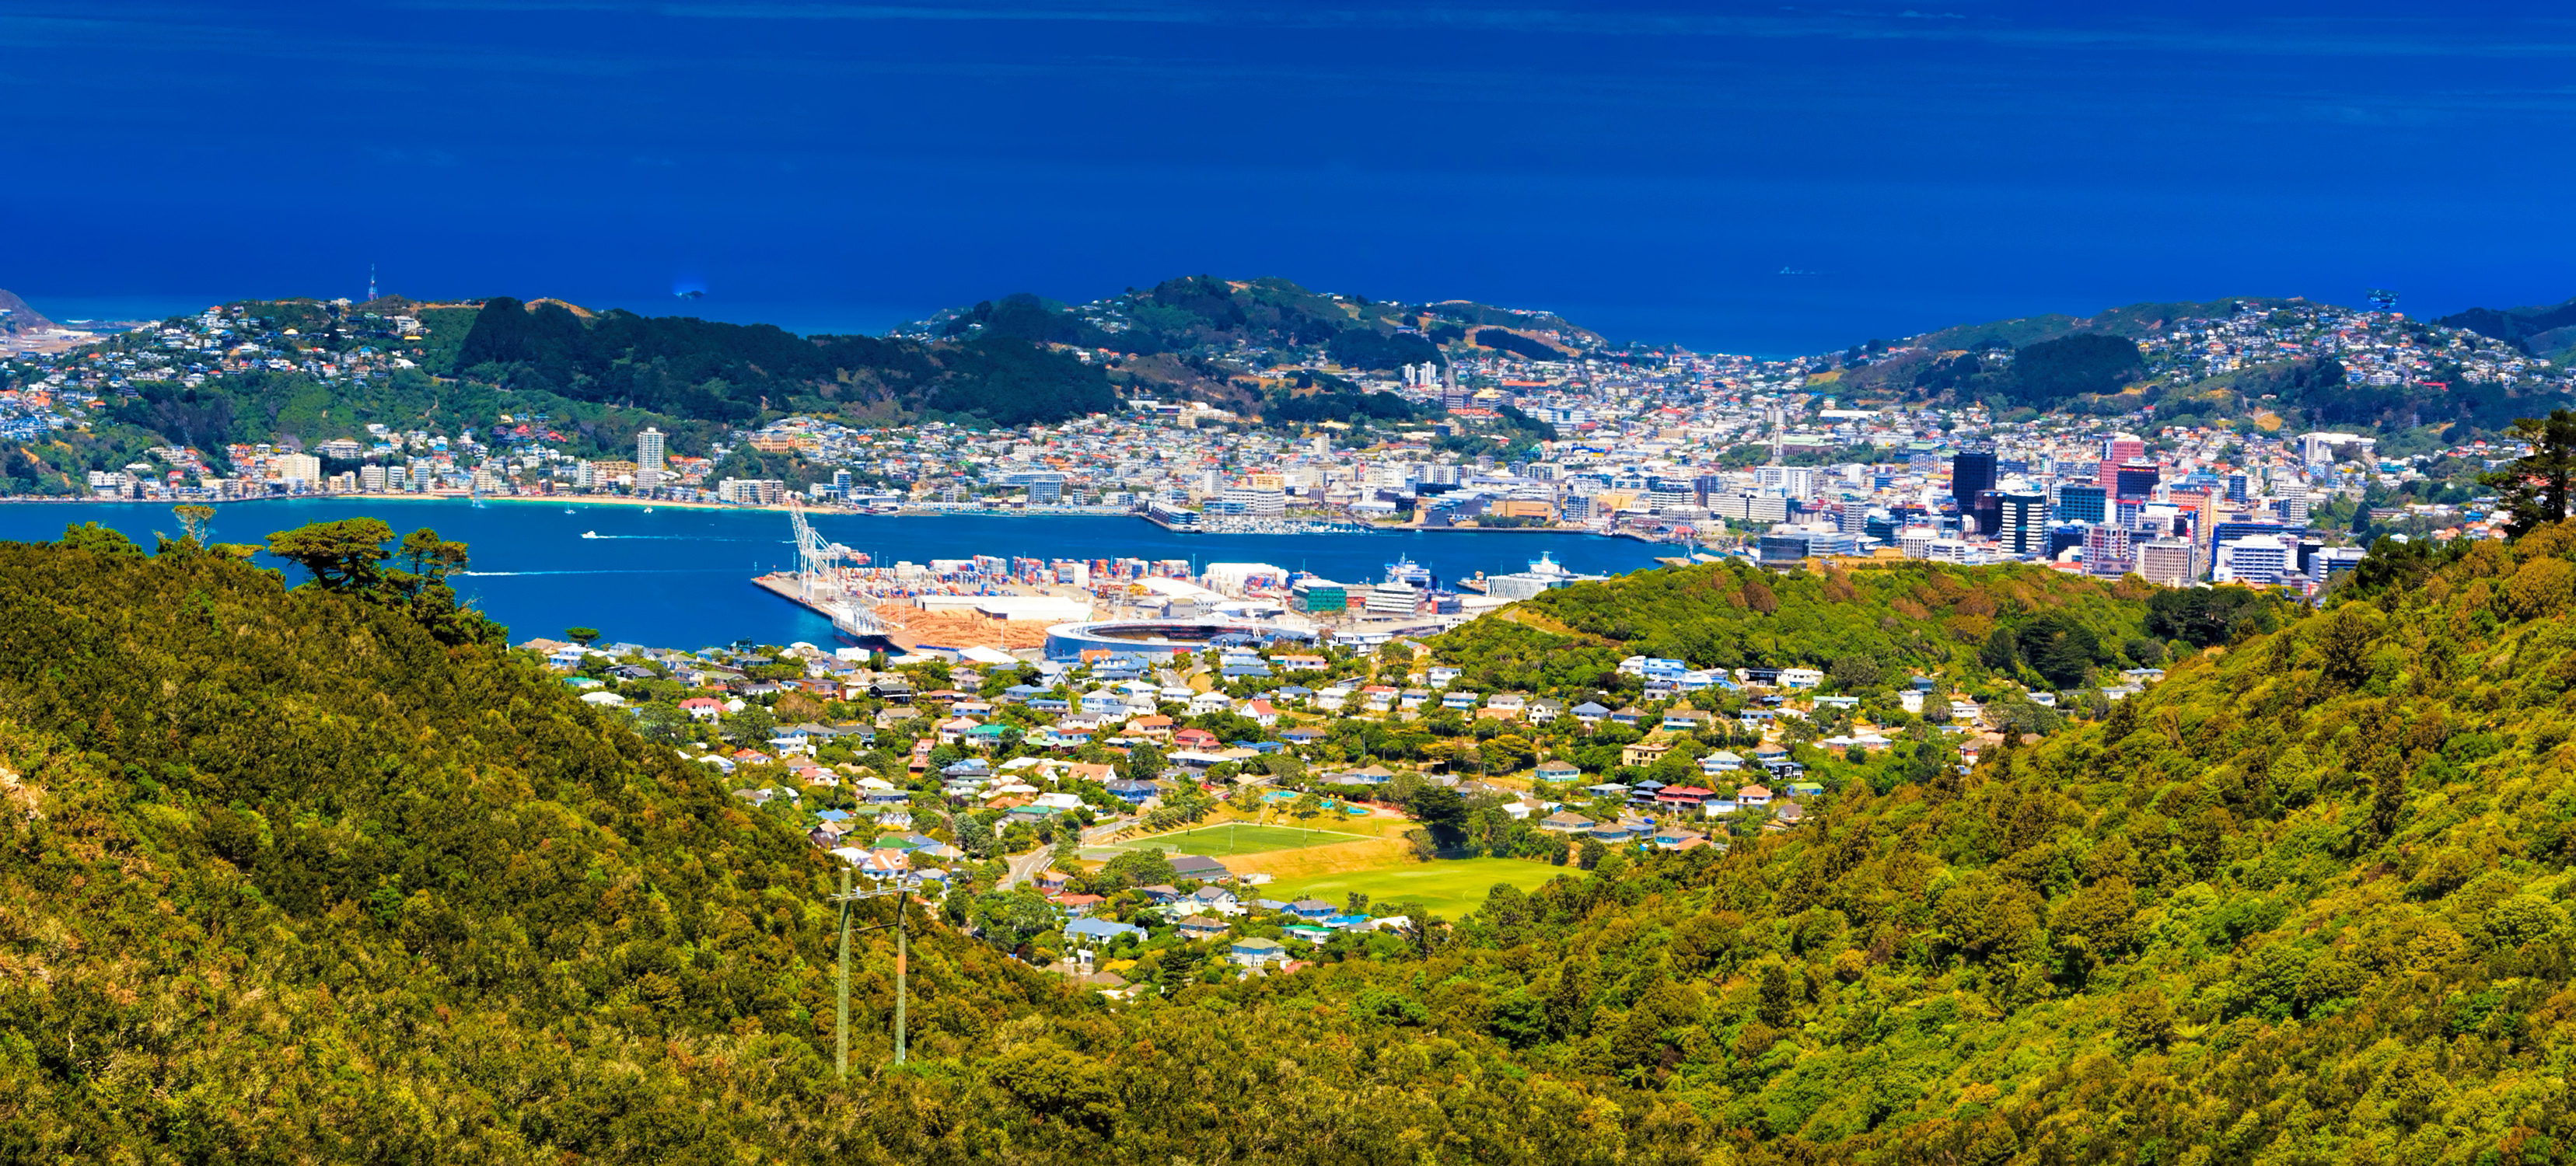 Welligton-Nova-Zelândia